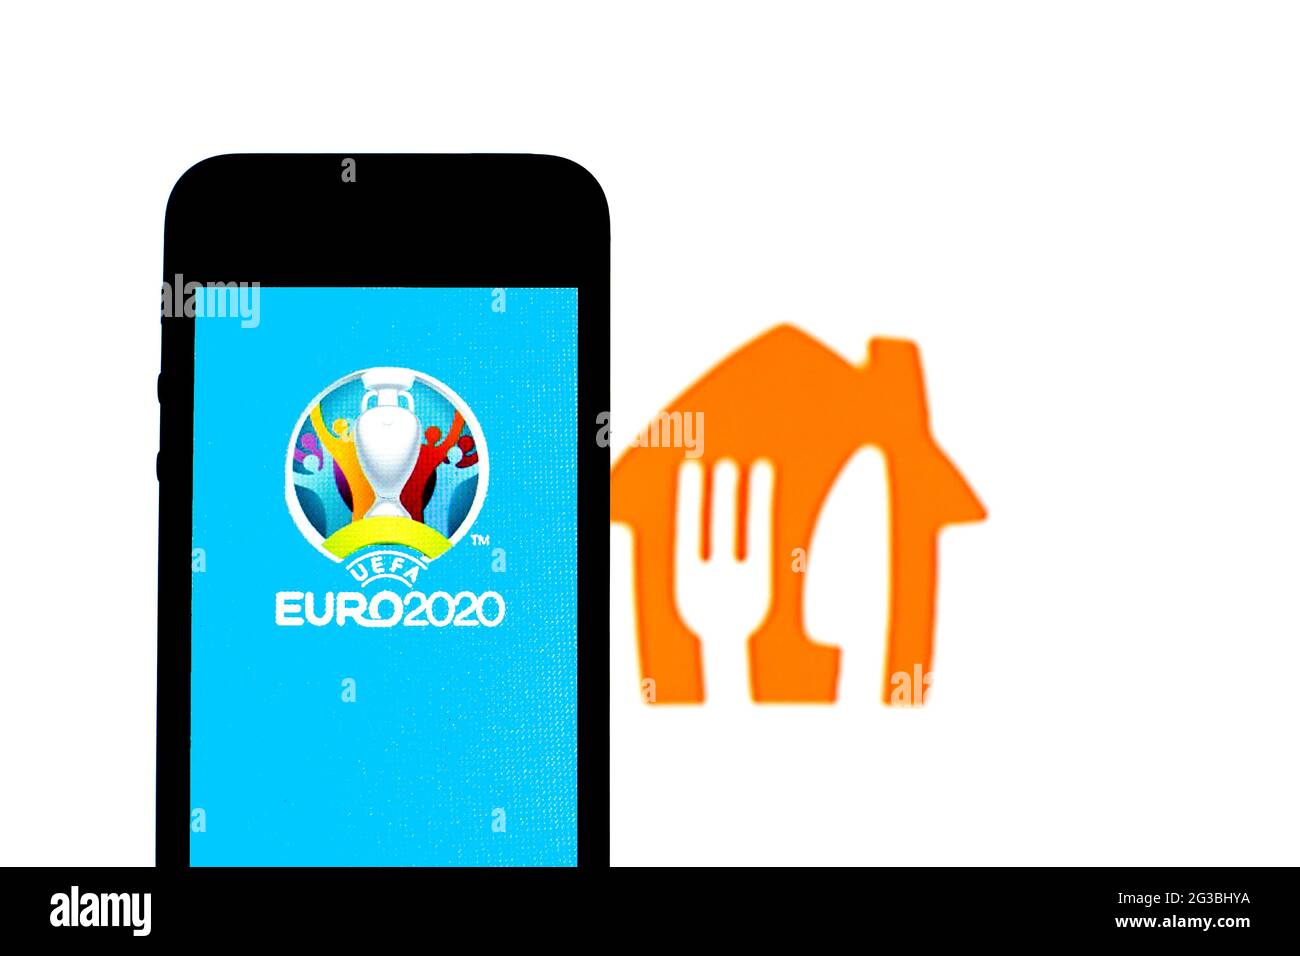 Sur cette photo, un logo UEFA Euro 2020 est affiché sur un smartphone avec un logo Just Eat Takeaway.com en arrière-plan. Banque D'Images